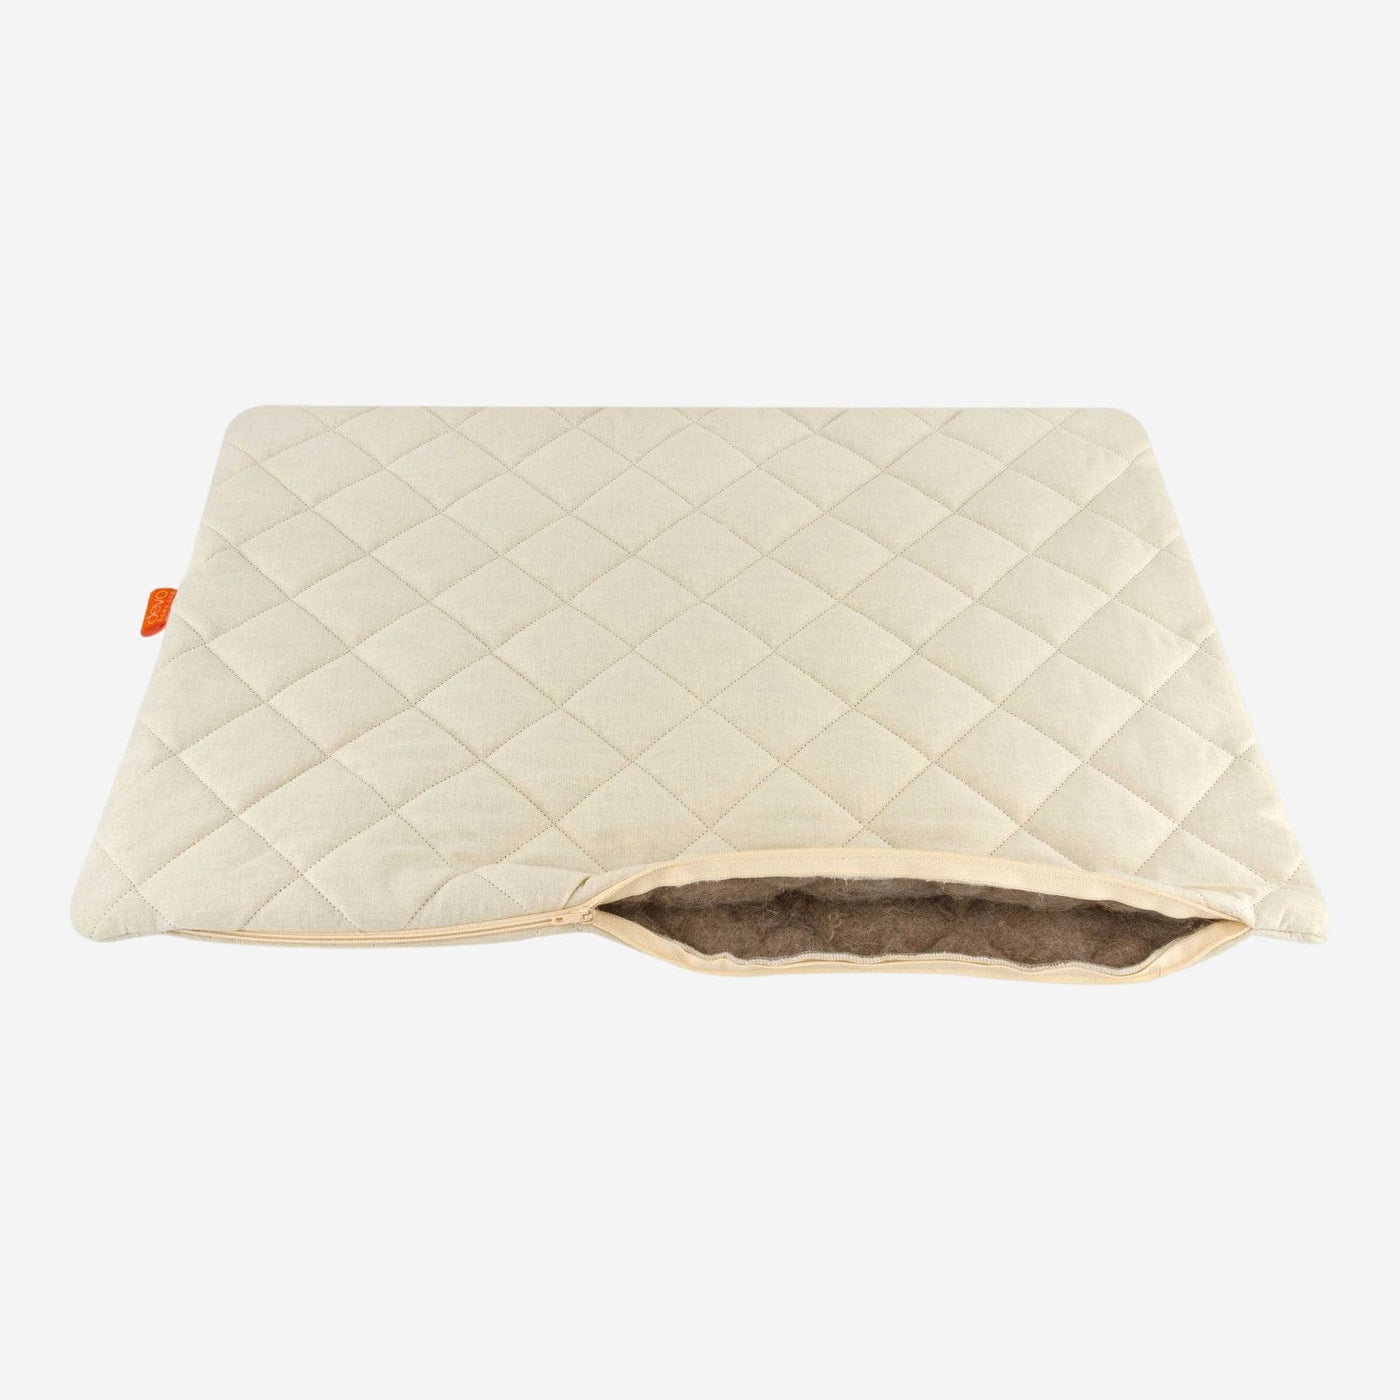 Hemp pillow case 50x60